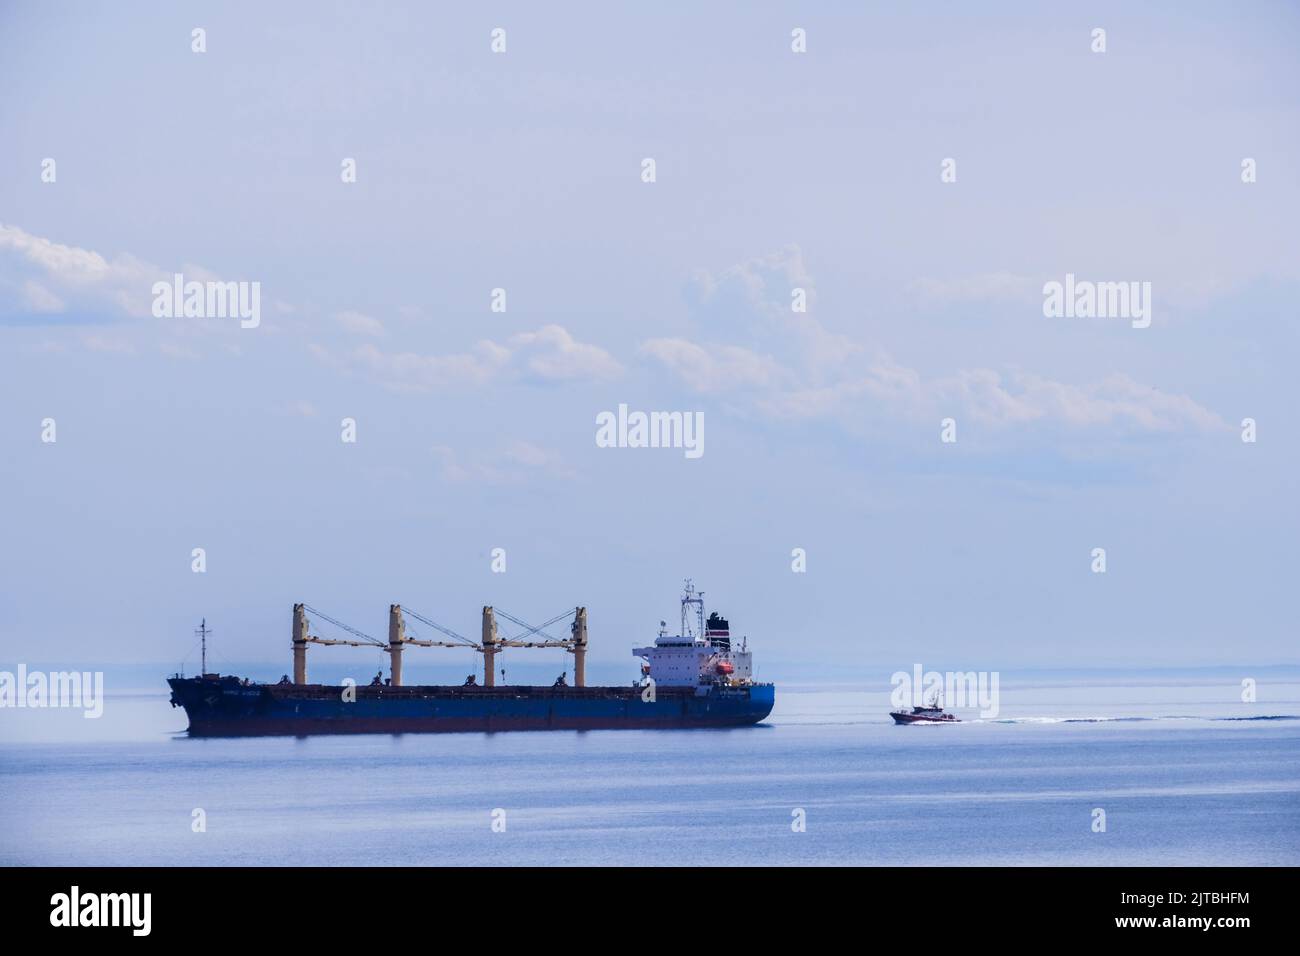 Cargo ship in the St. Lawrence River, Quebec, Canada, Cap de Bon-Desir, Quebec. Stock Photo